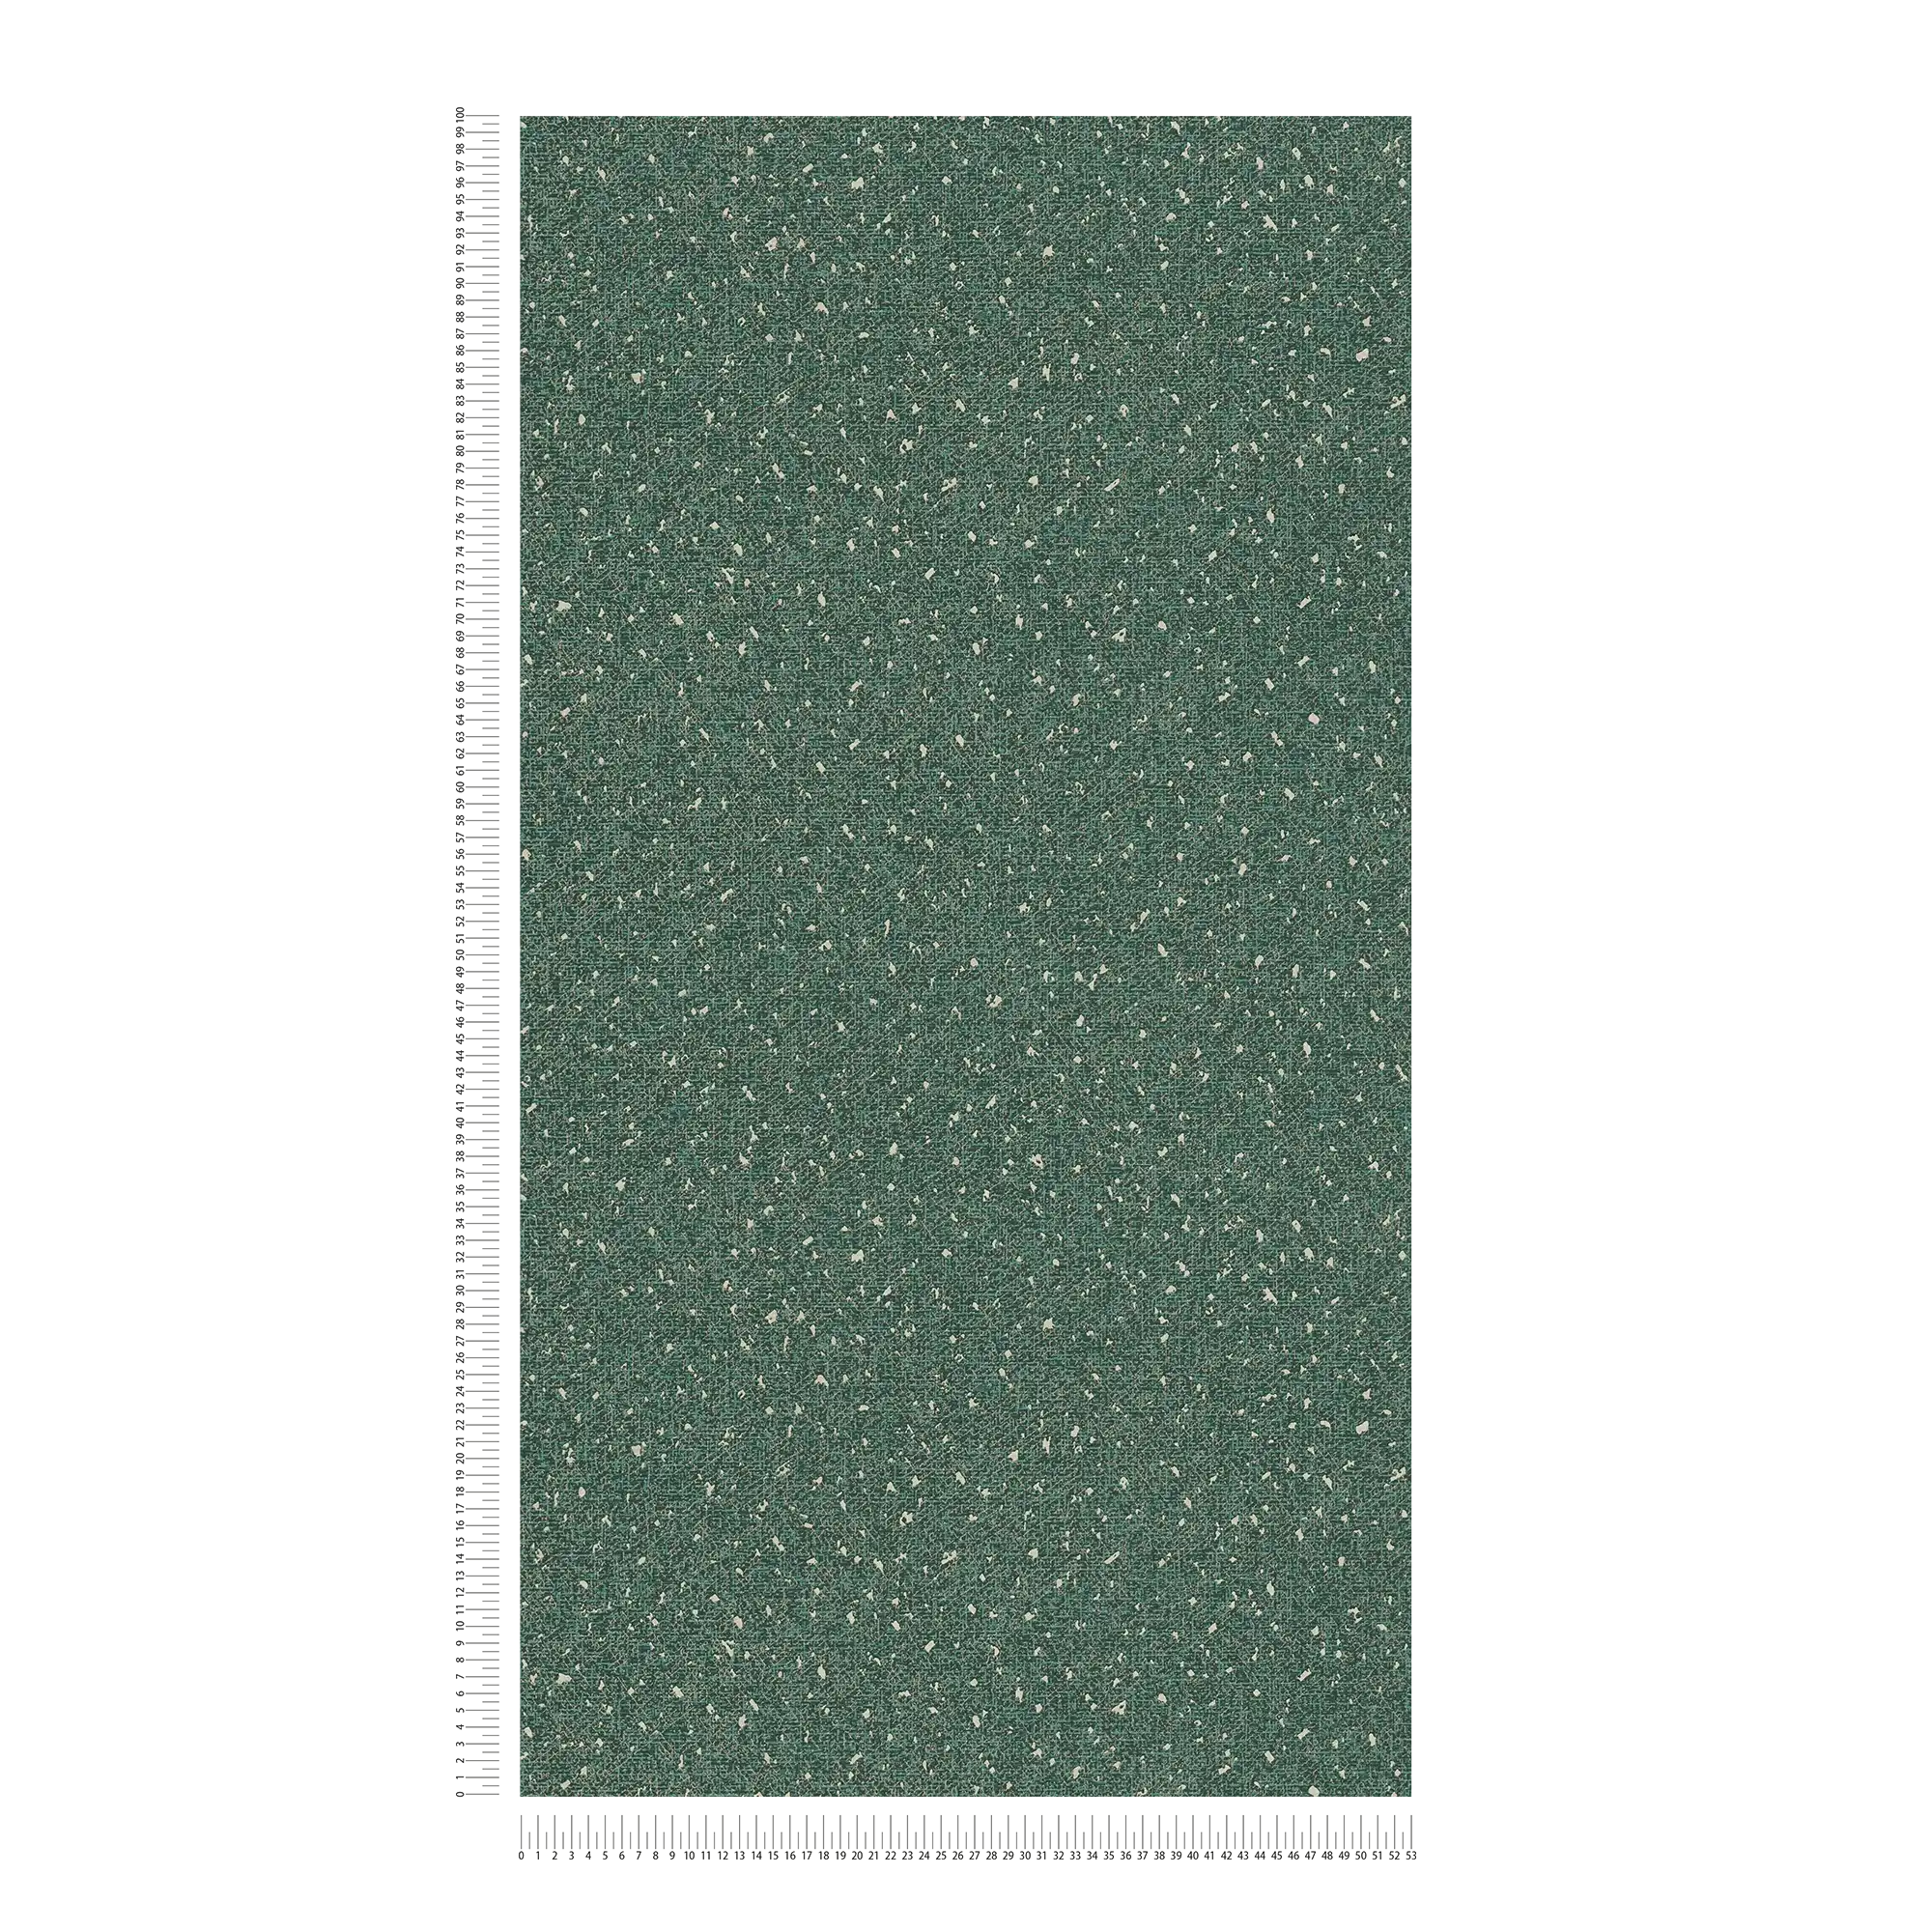             Carta da parati con struttura tessile e accenti metallici - Verde, Metallizzato
        